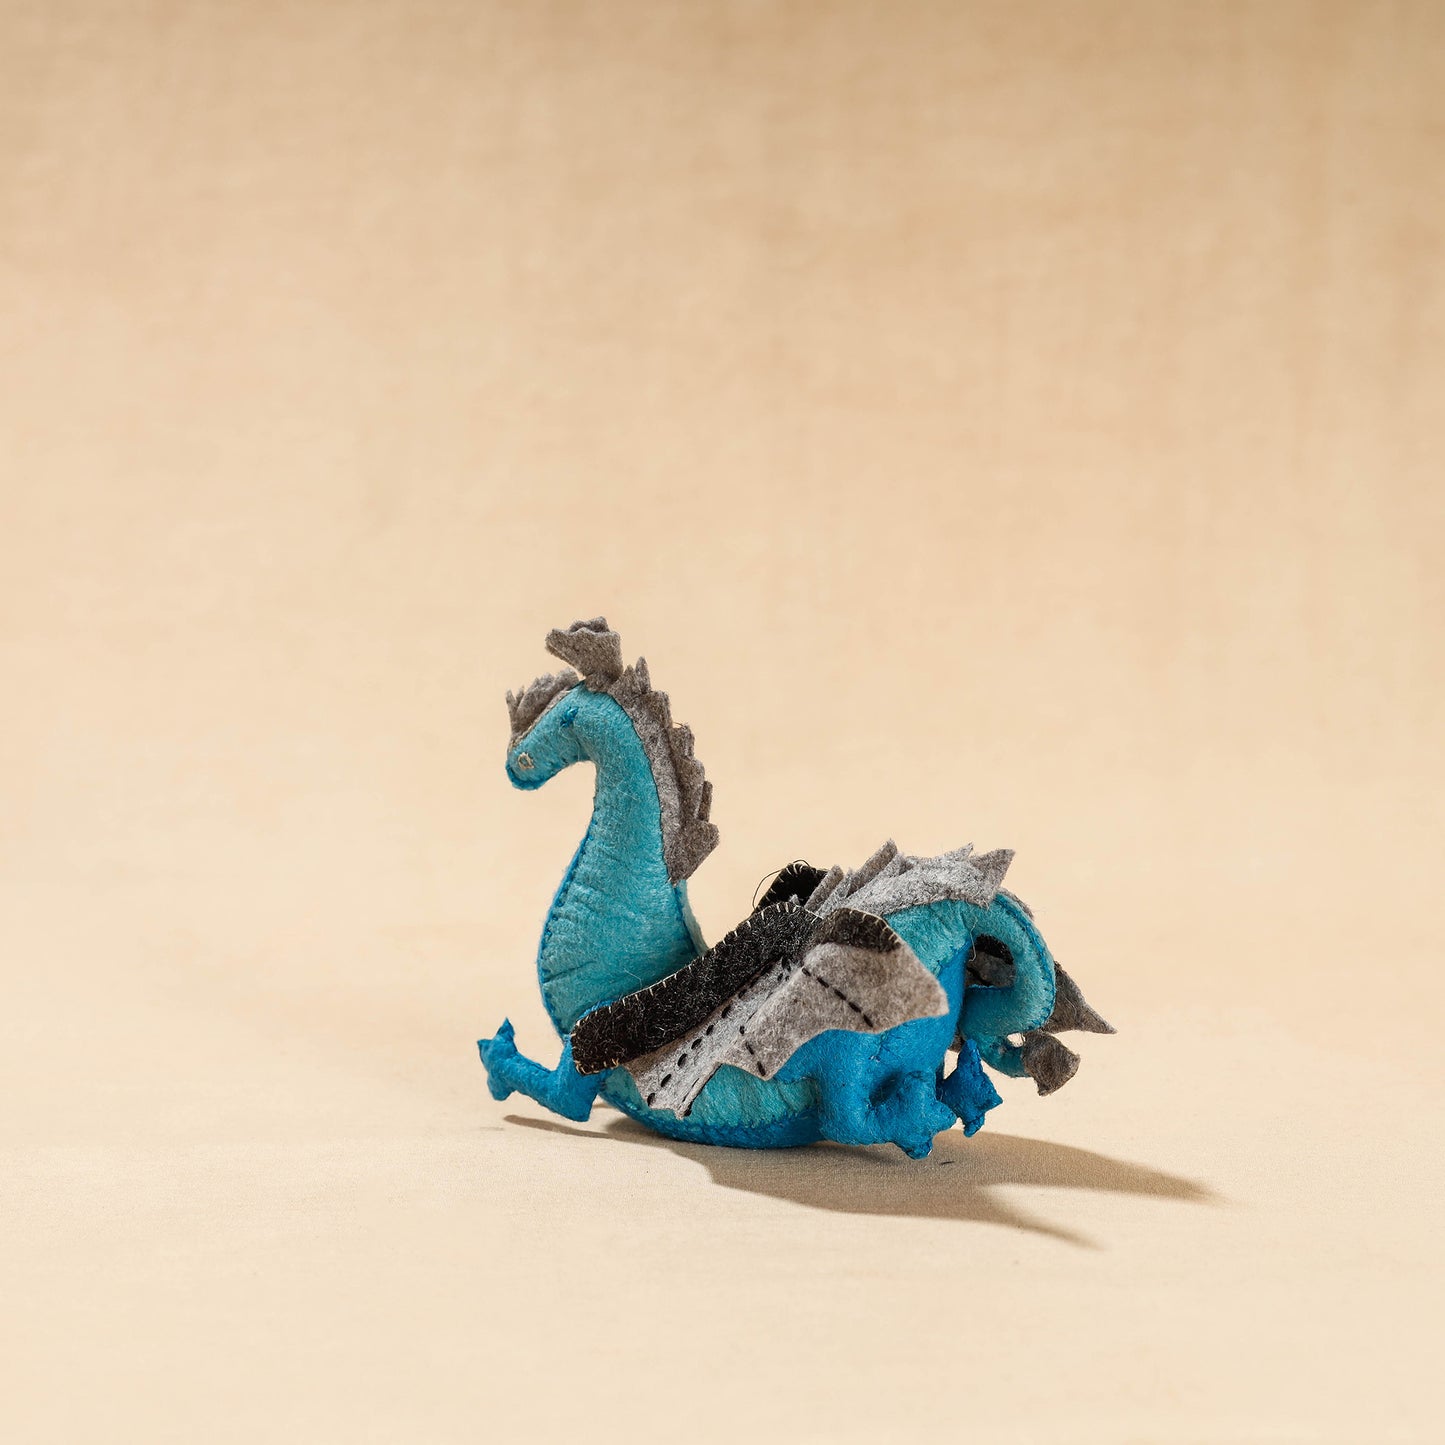 Blue Dragon - Handmade Felt Work Stuffed Soft Toy